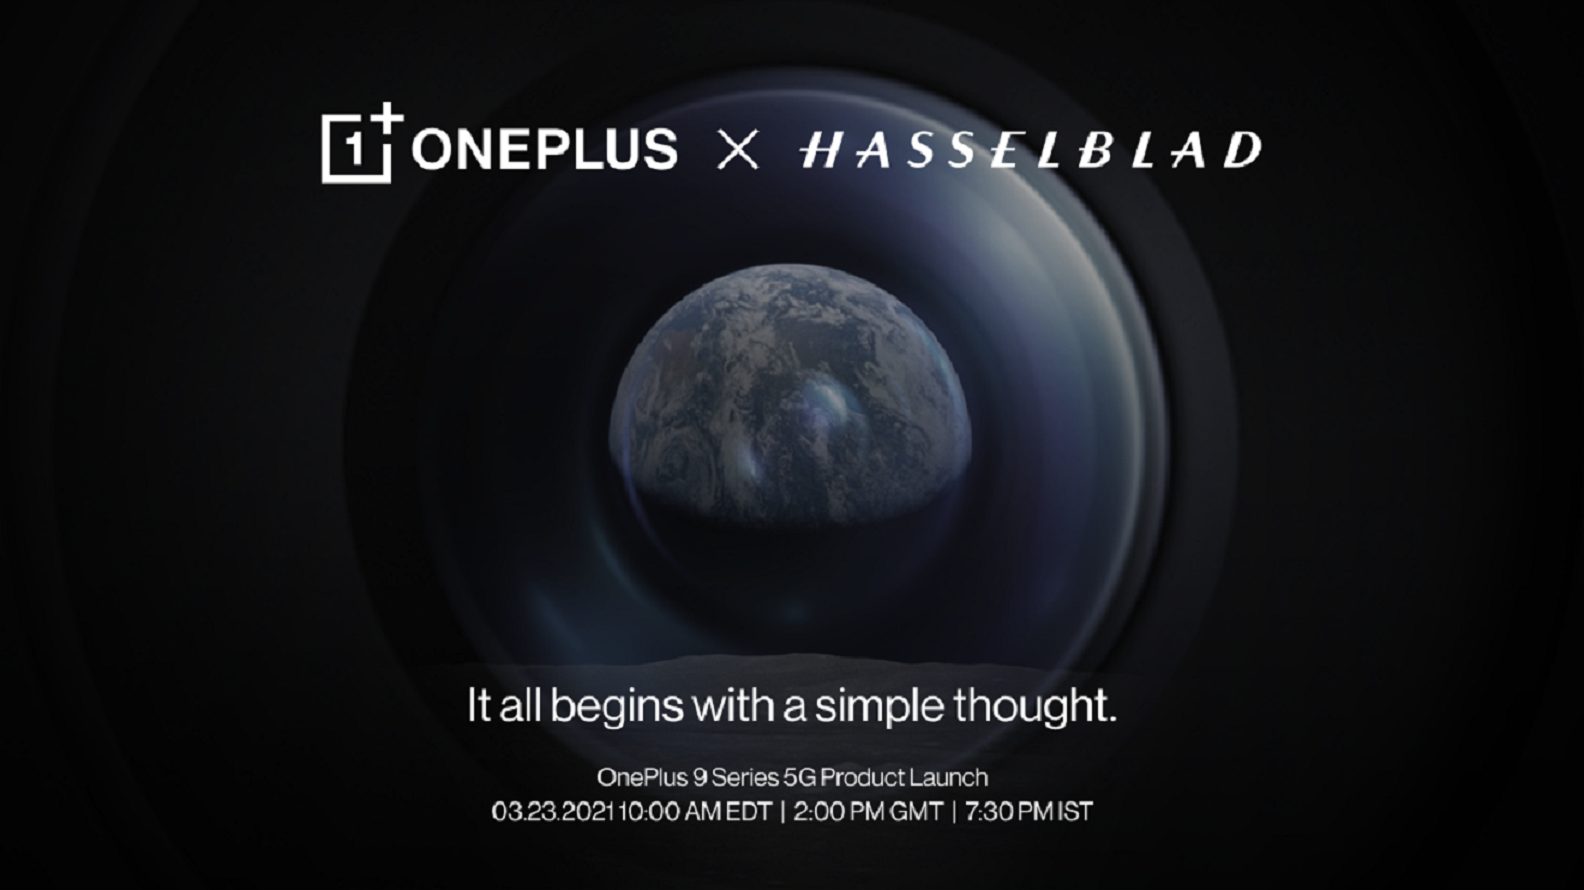 pelancaran OnePlus 9 hasselblad